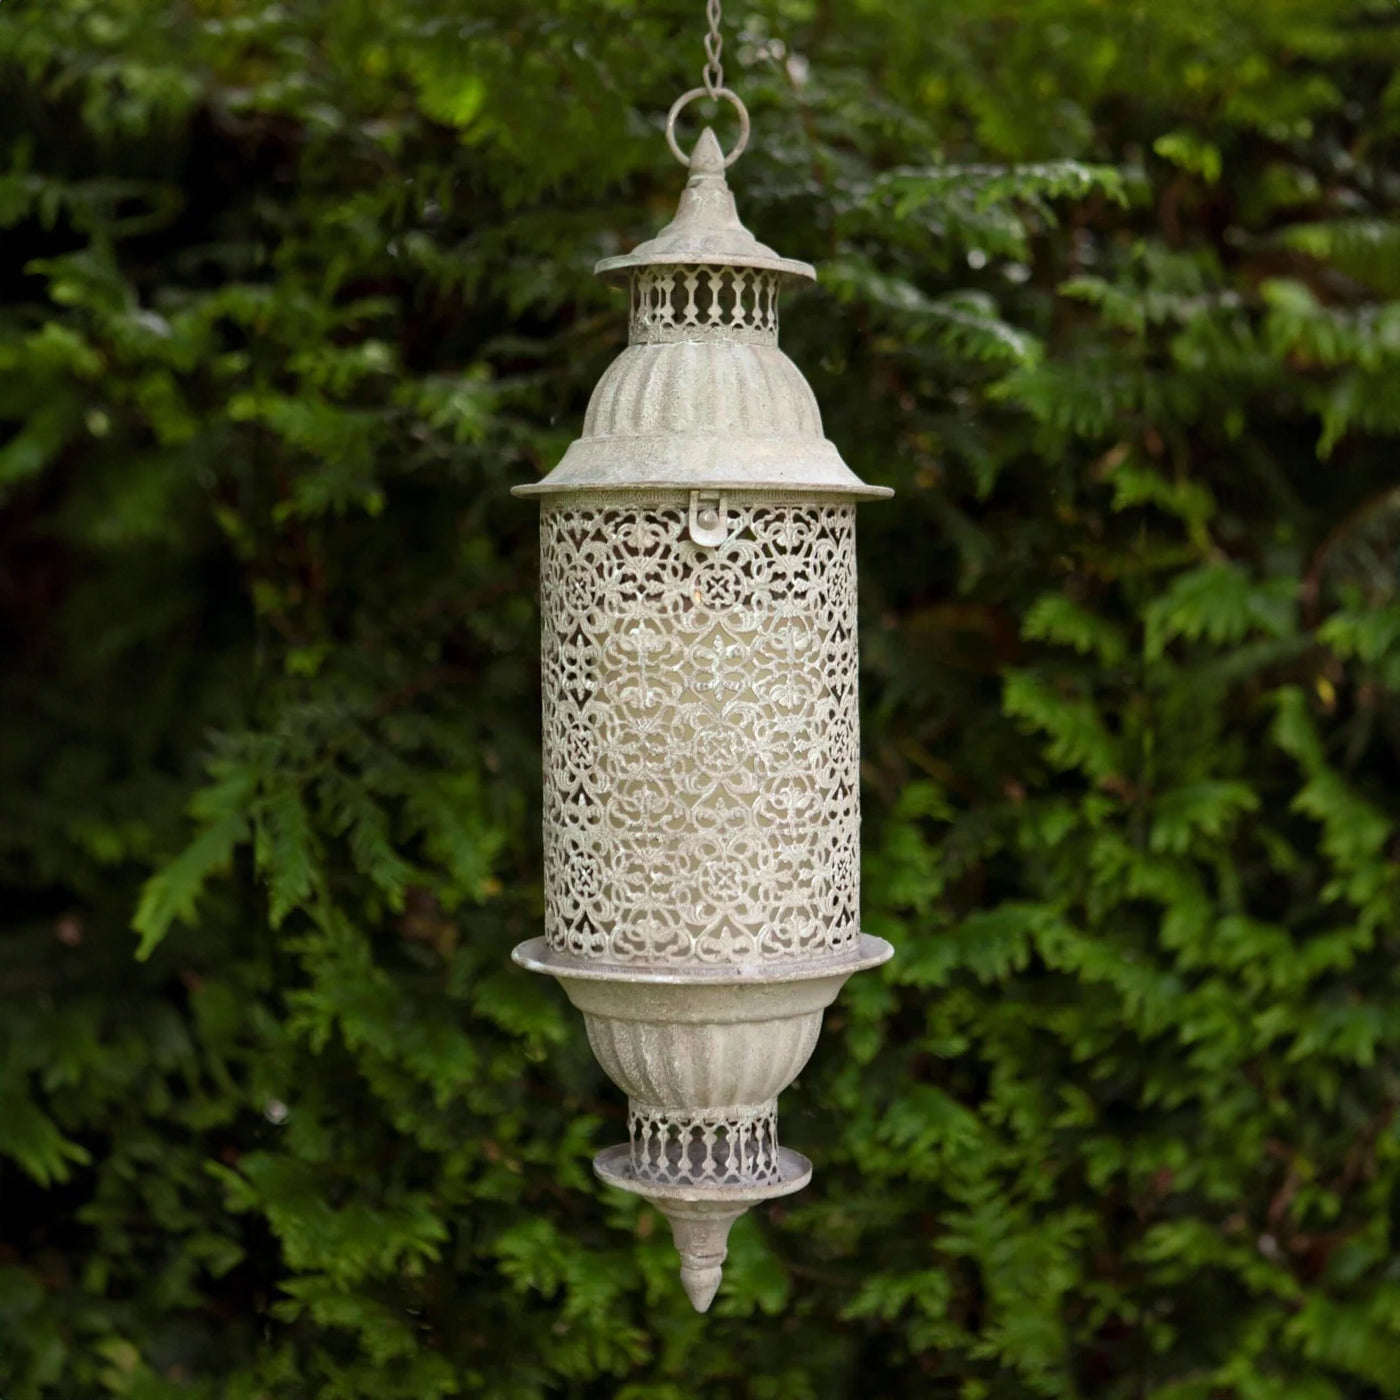 Metal Hanging Garden Lantern with Filigree Design